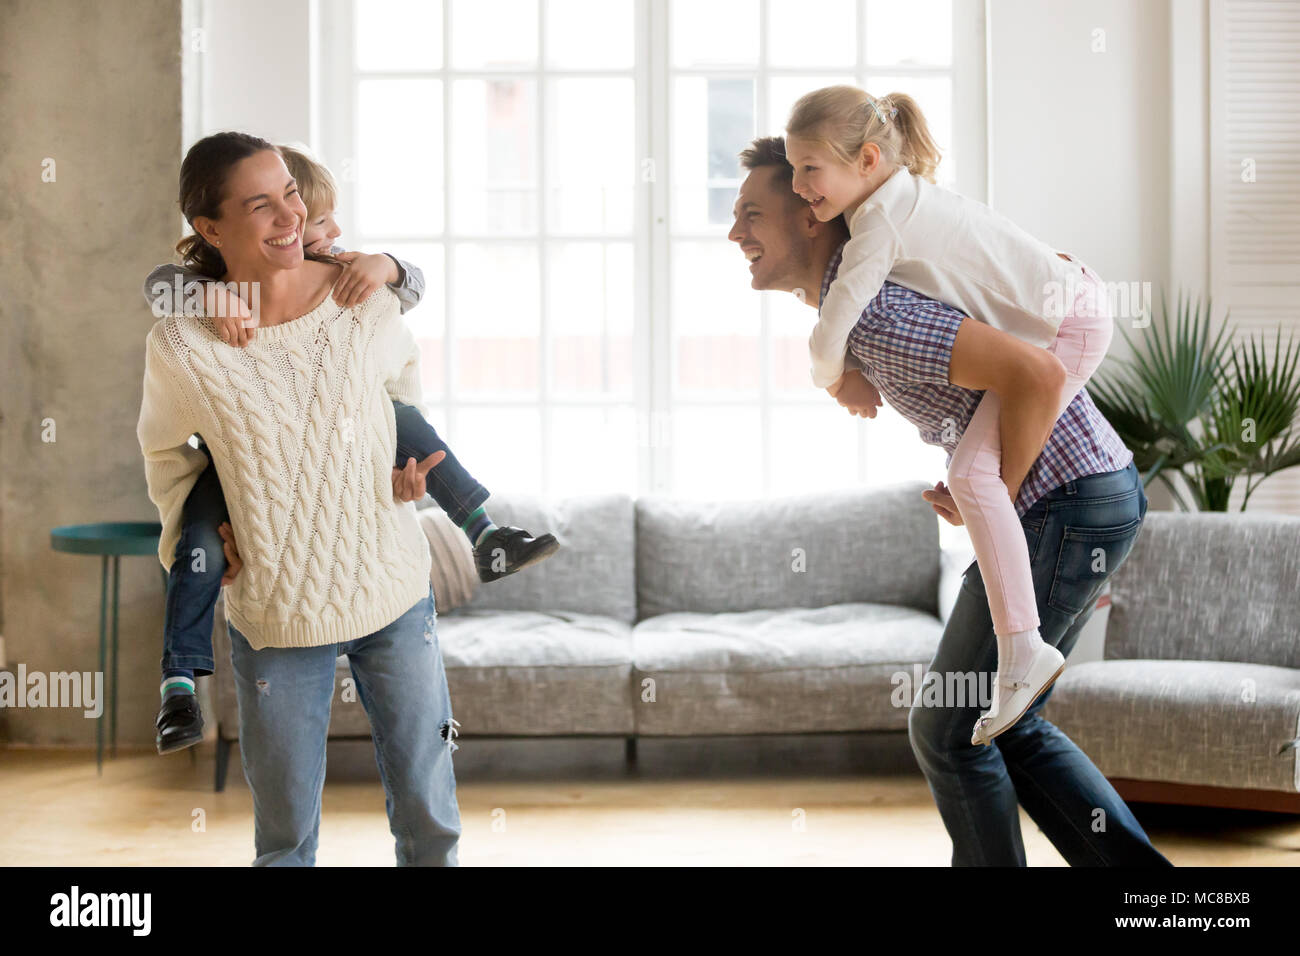 Les parents sur les enfants rire holding back donnant aux enfants piggyback ride jouer ensemble à la maison, en famille joyeux jeu drôle actifs ensemble, tr Banque D'Images